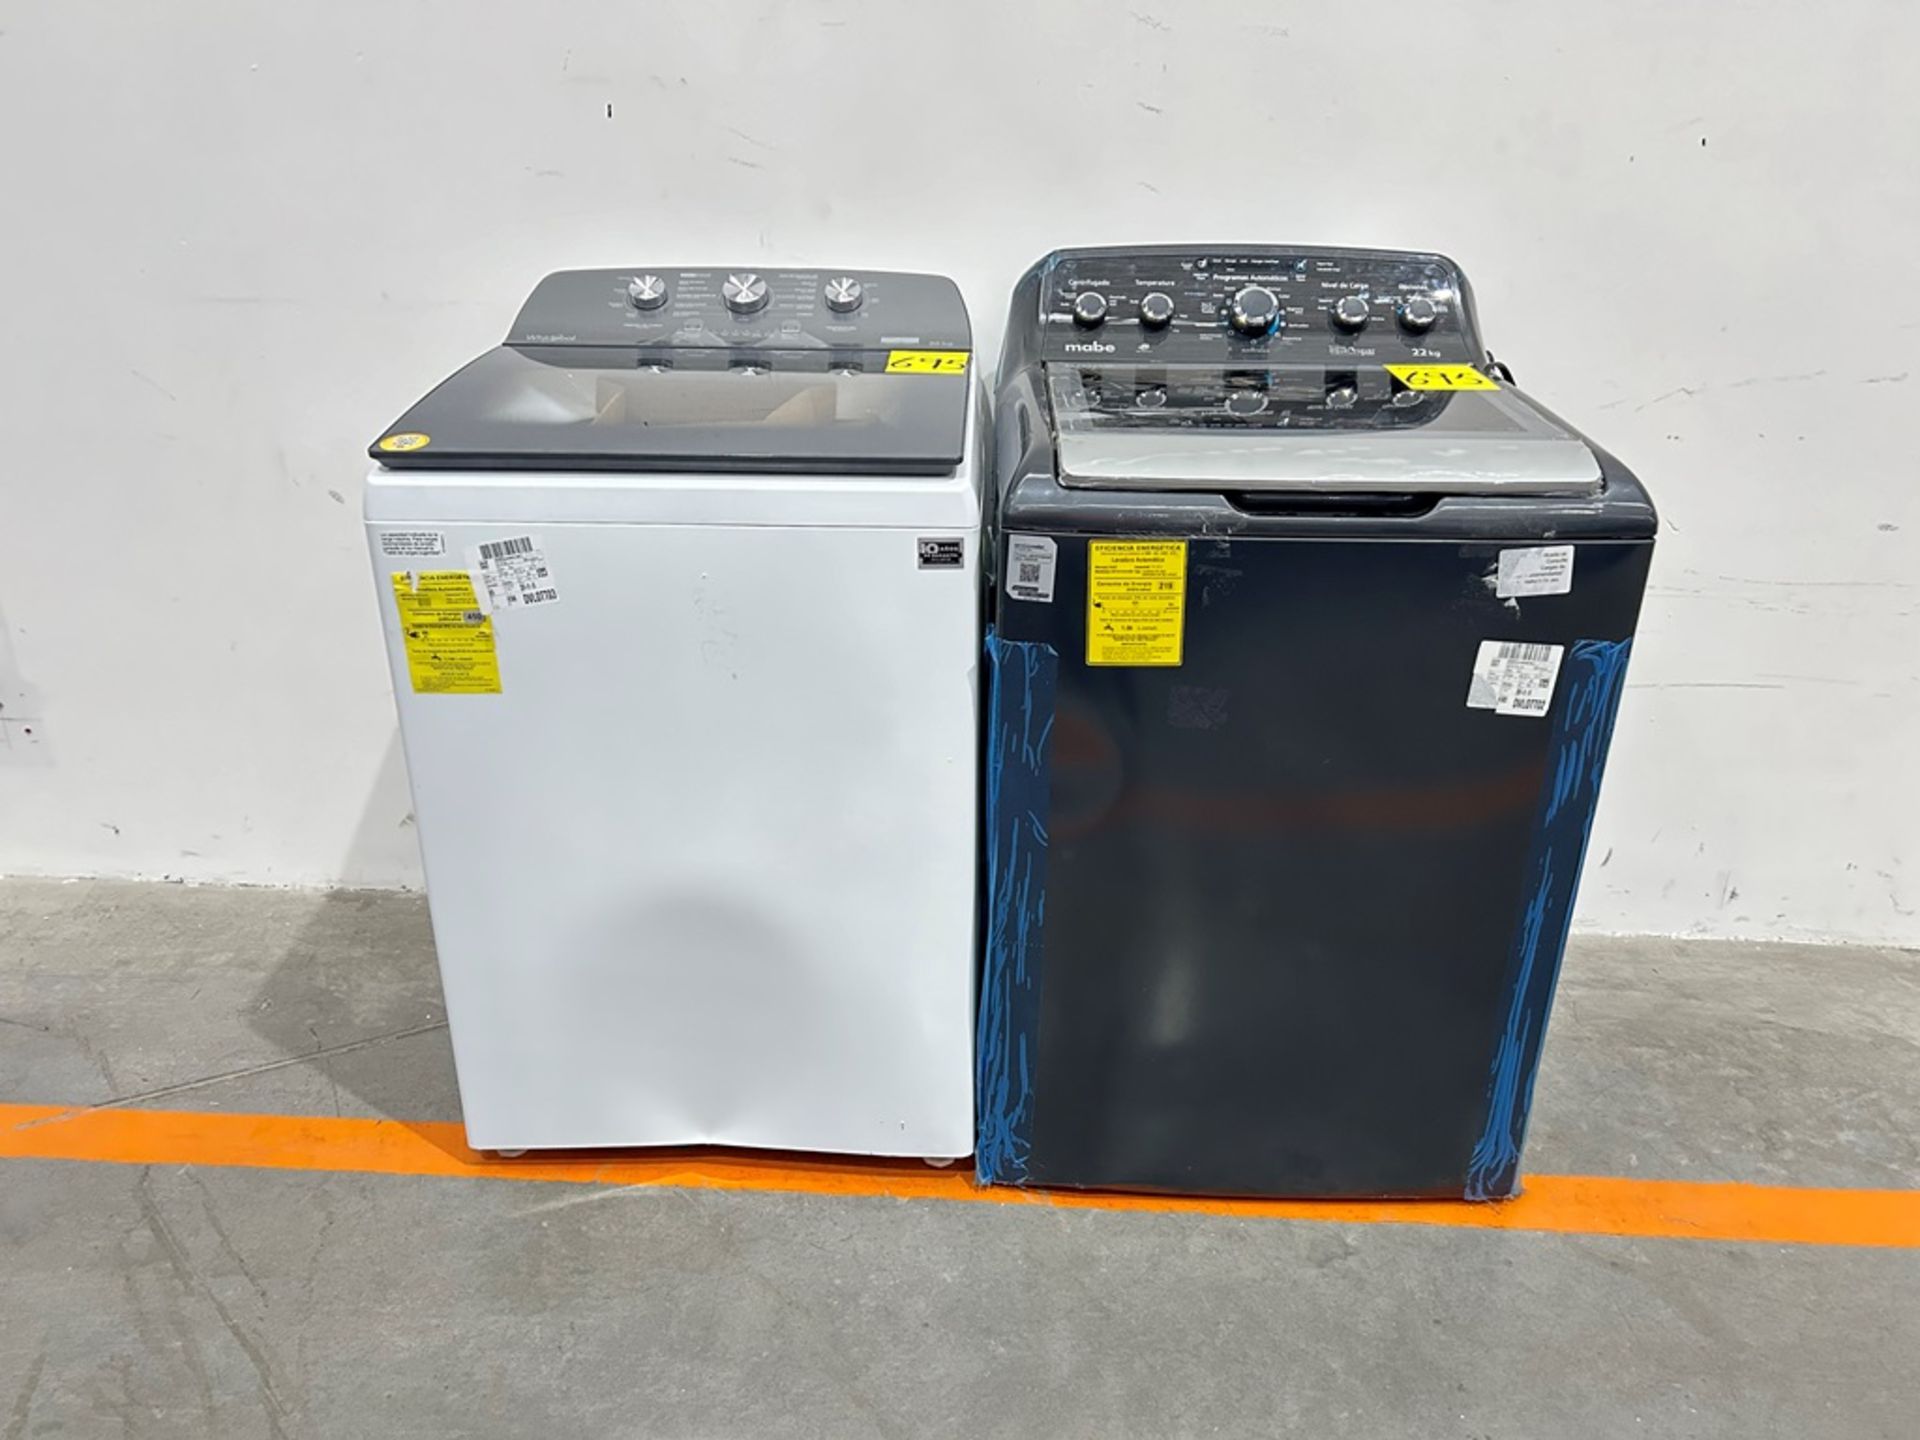 Lote de 2 lavadoras contiene: 1 Lavadora de 22 KG Marca MABE, Modelo LMA72215WDAB00, Serie S23162,